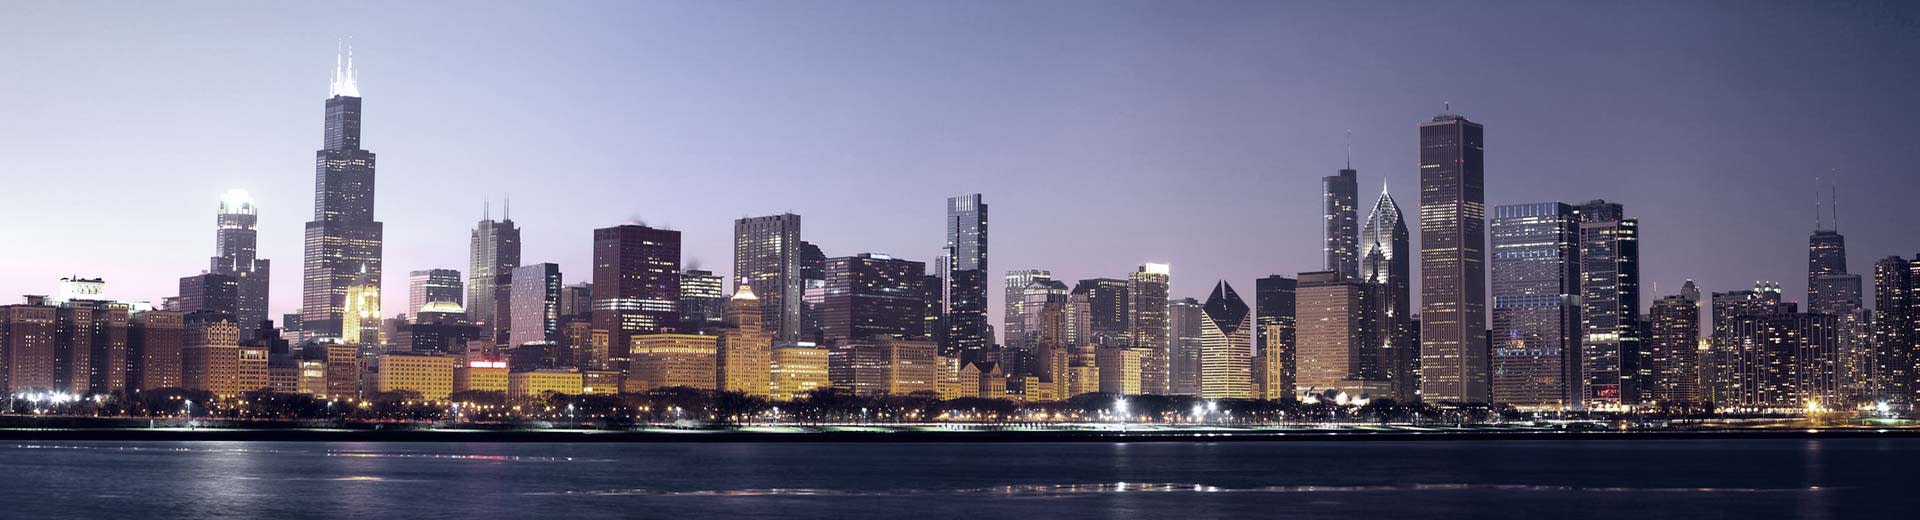 El horizonte de Chicago ilumina el cielo sobre él, muchos edificios altos están siluetados.